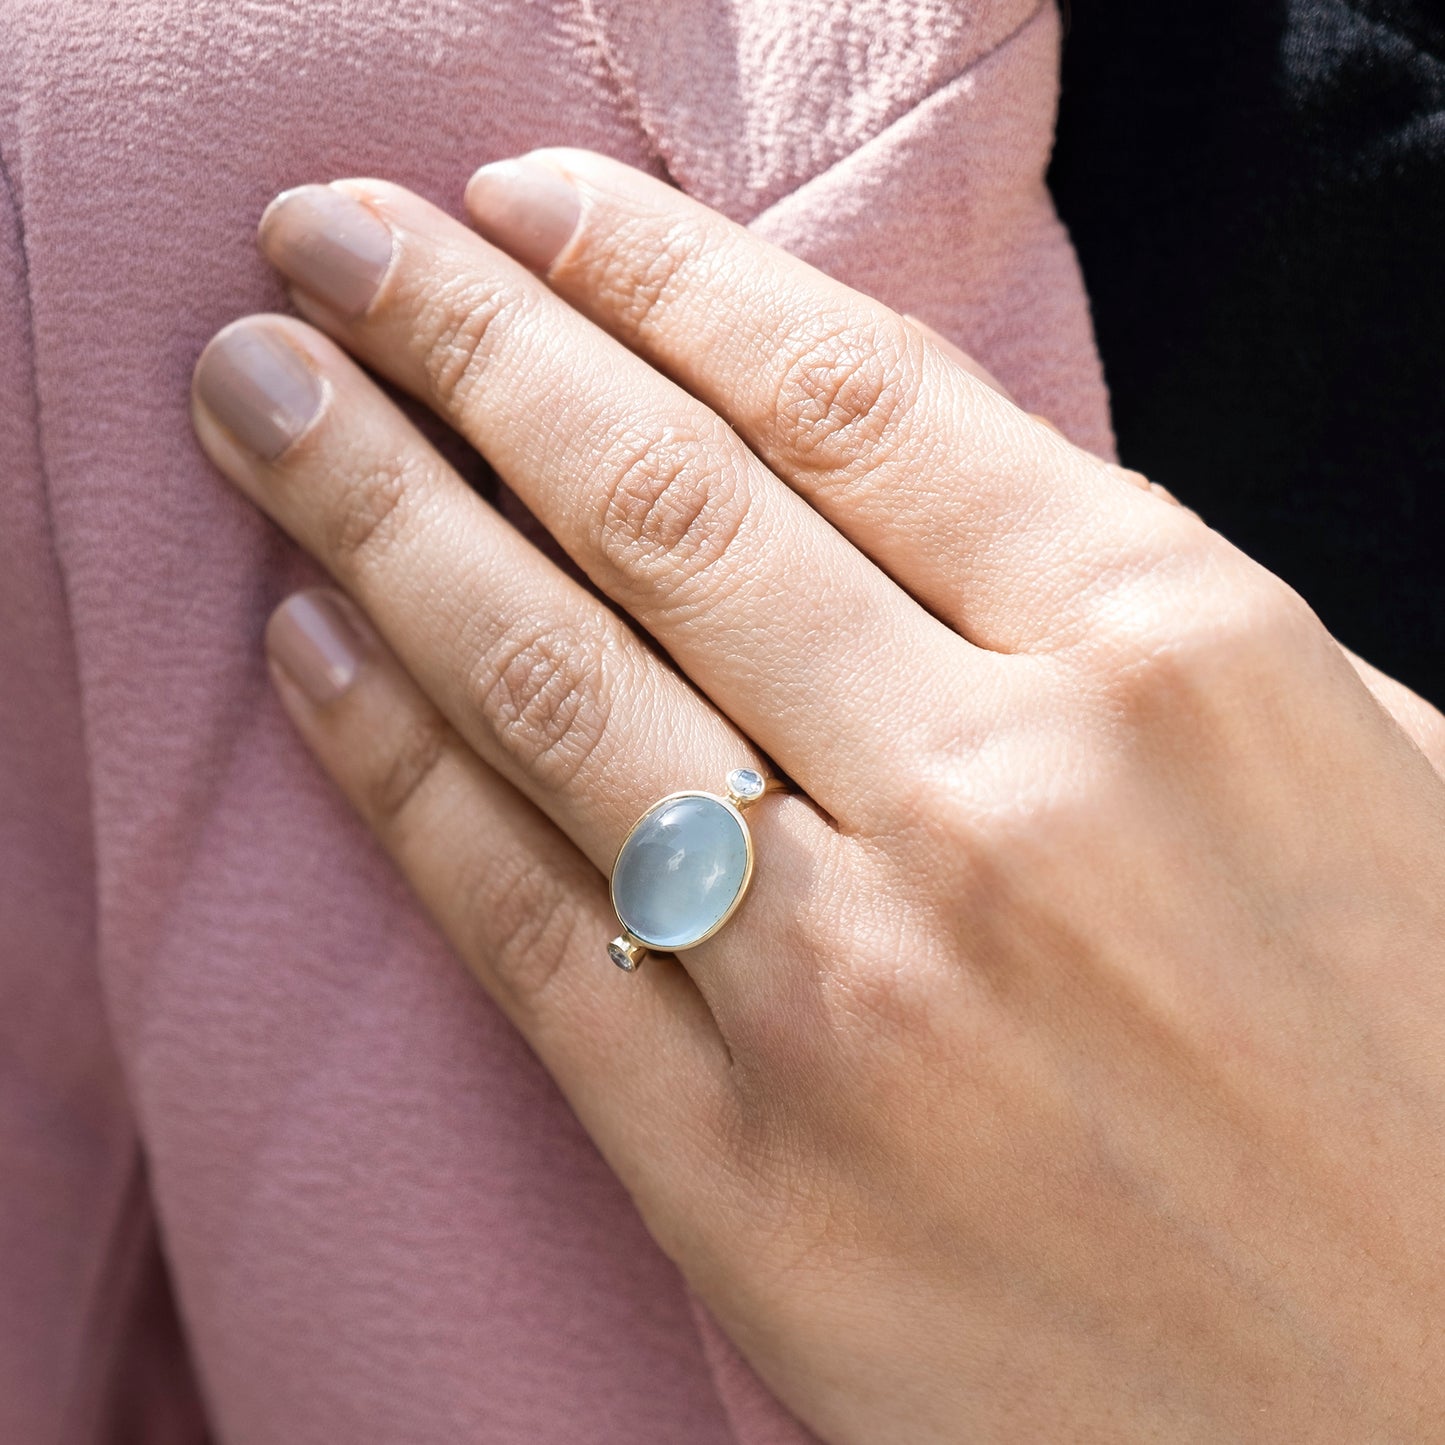 Buy White Aquamarine Stone Ring Online | Krishna Jewellers